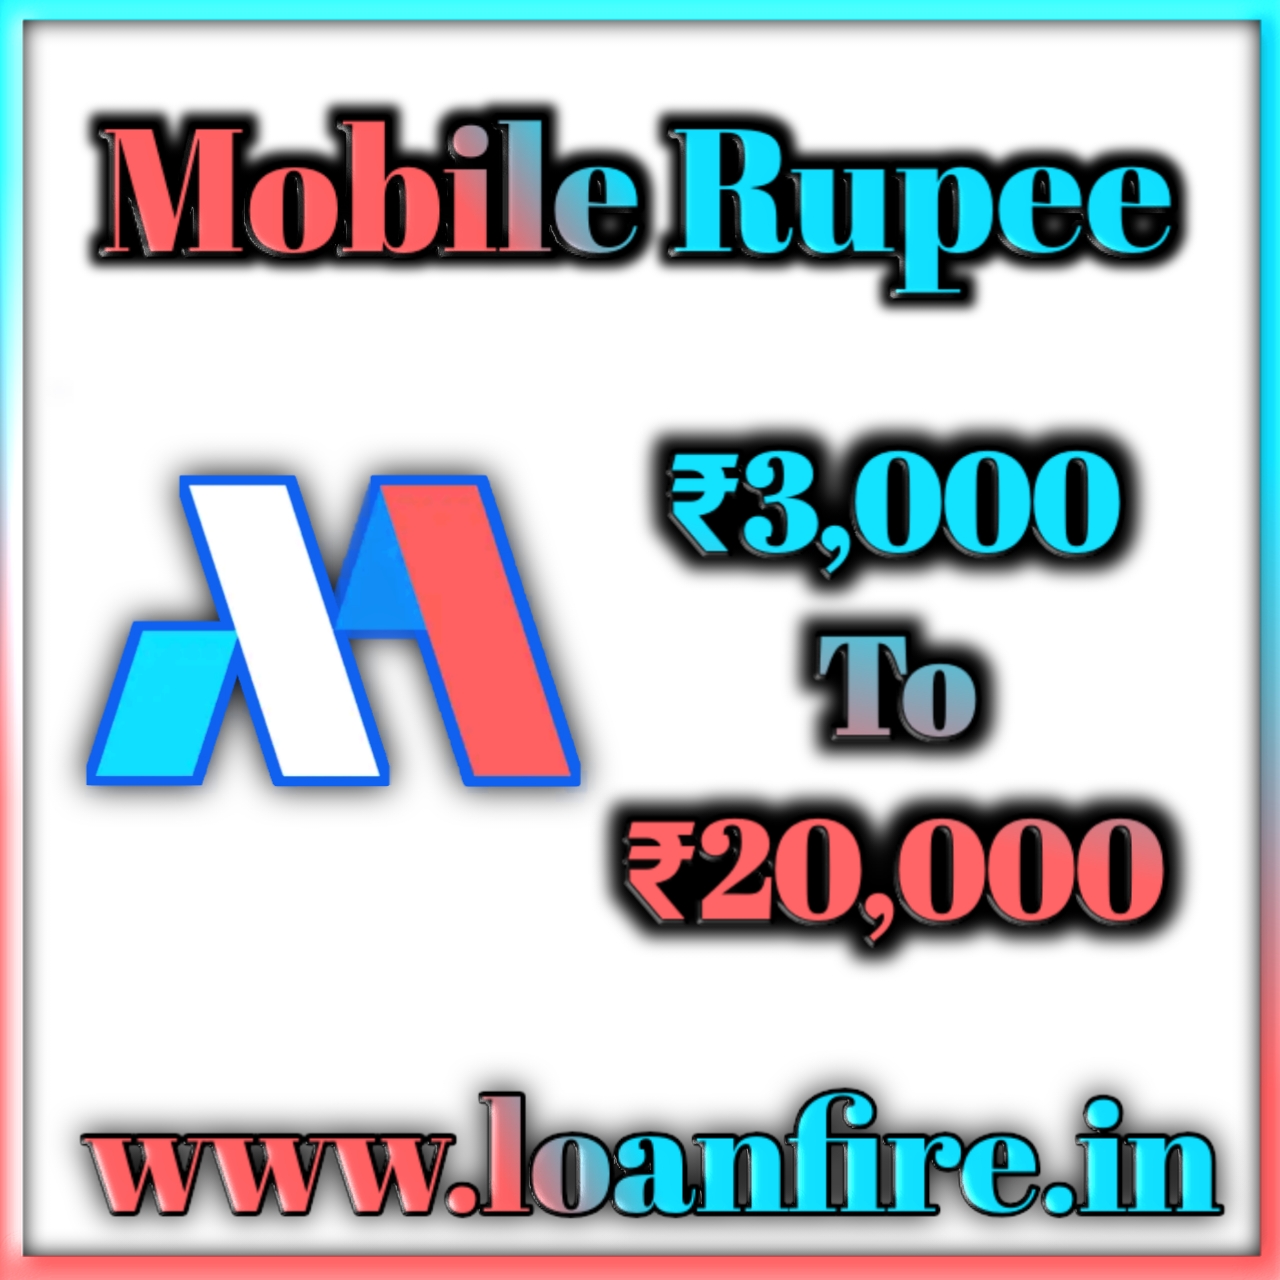 Mobile Rupee Loan App Loan Amount